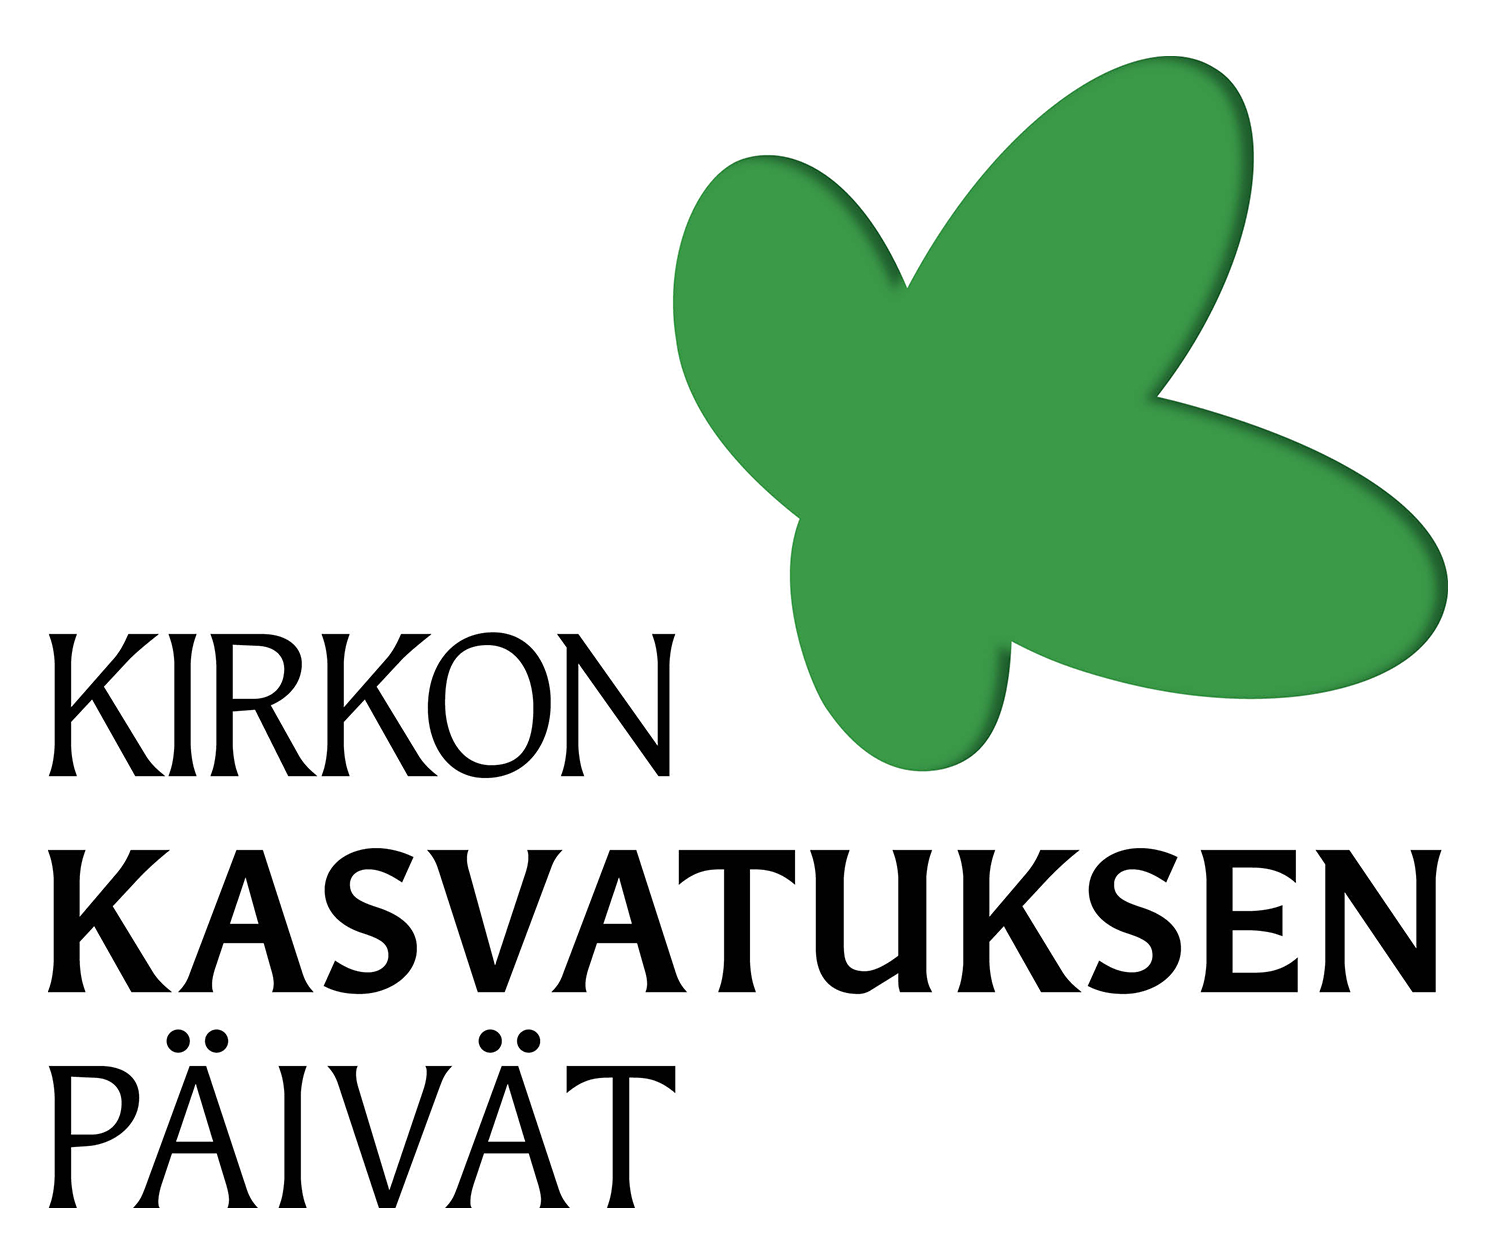 Kirkon kasvatuksen päivät järjestetään 11-13.1.2022 messu- ja tapahtumakeskus Paviljongissa Jyväskylässä.